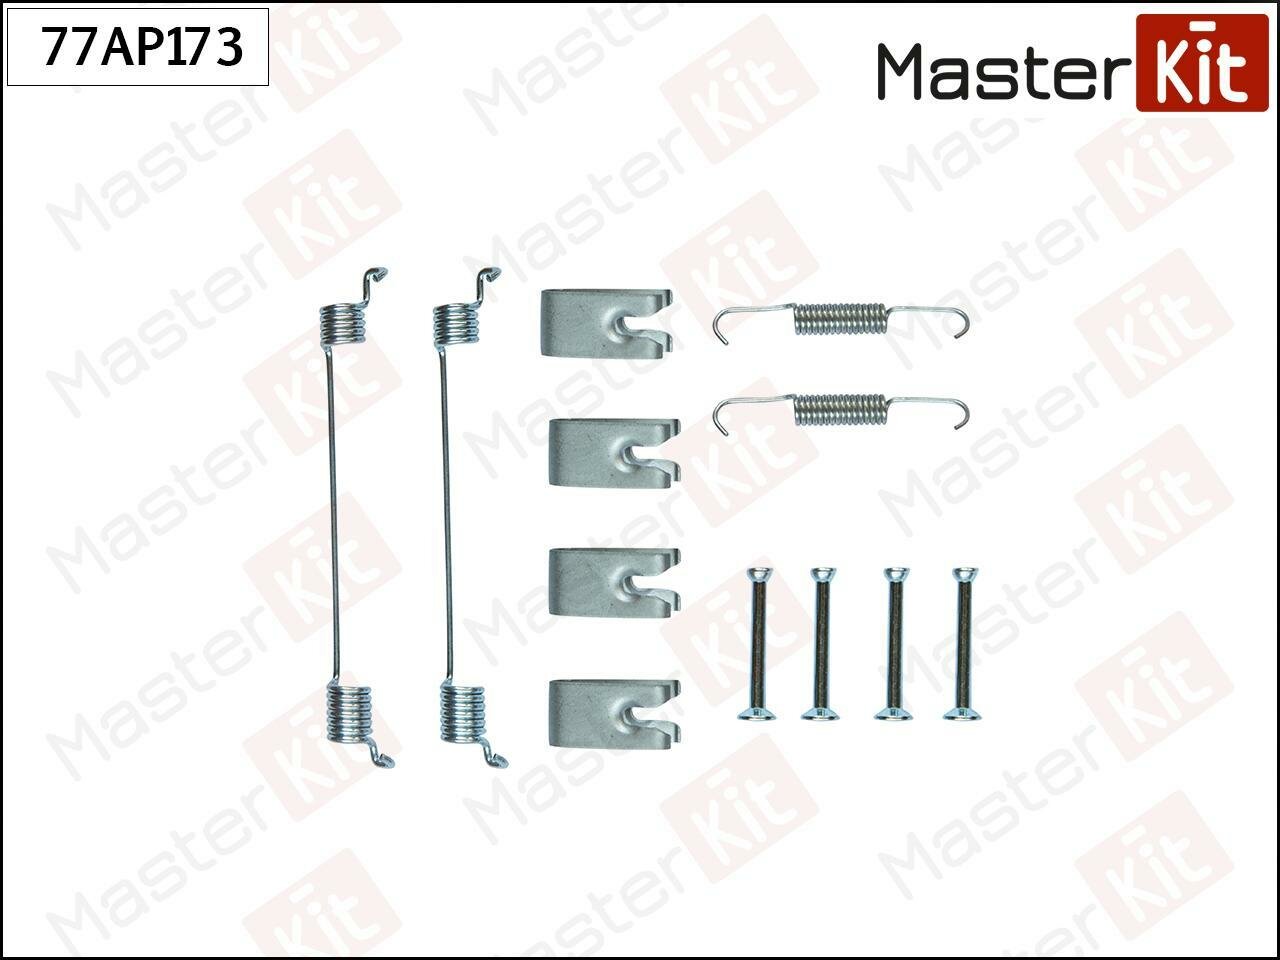 Комплект установочный тормозных колодок Citroen 77B0186K masterkit 77AP173 1шт